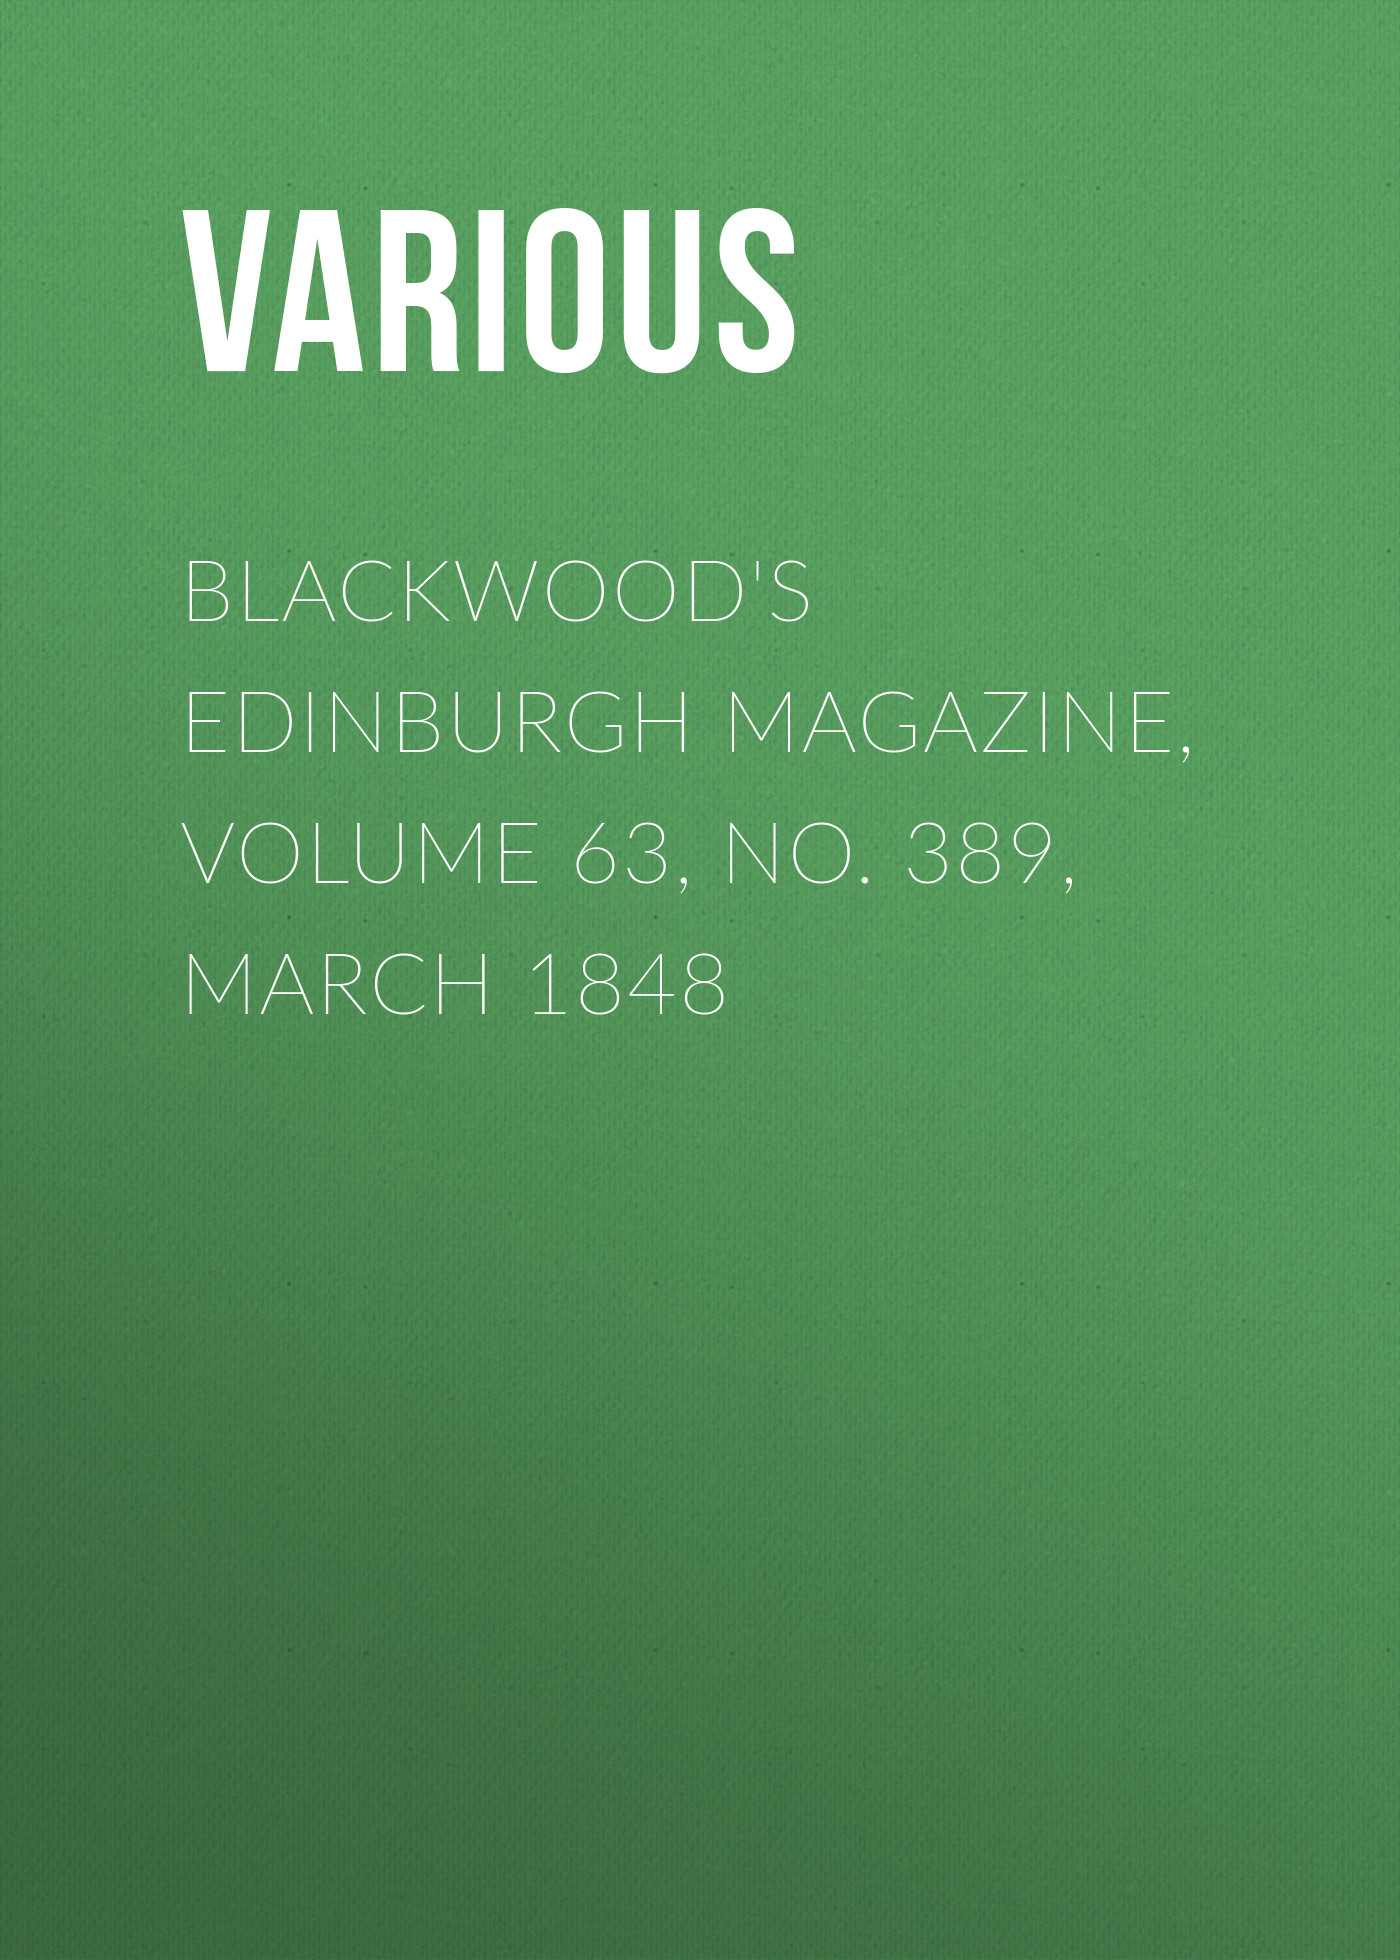 Книга Blackwood's Edinburgh Magazine, Volume 63, No. 389, March 1848 из серии , созданная  Various, может относится к жанру Журналы, Зарубежная образовательная литература, Книги о Путешествиях. Стоимость электронной книги Blackwood's Edinburgh Magazine, Volume 63, No. 389, March 1848 с идентификатором 25571047 составляет 0 руб.